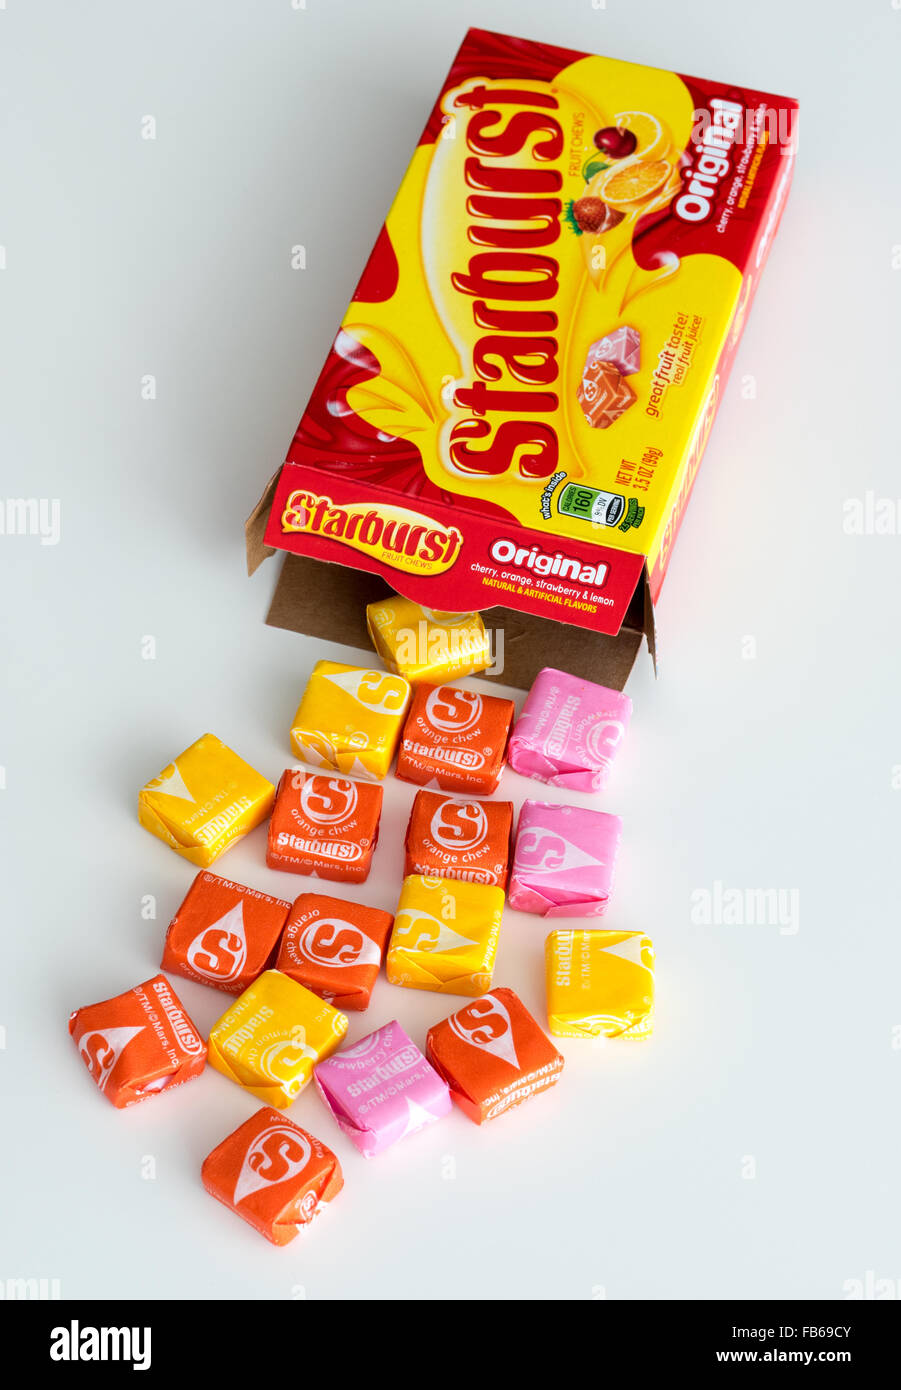 Une boîte de bonbons Starburst, un bonbon à saveur de fruit fabriqué par la société Wrigley. Banque D'Images